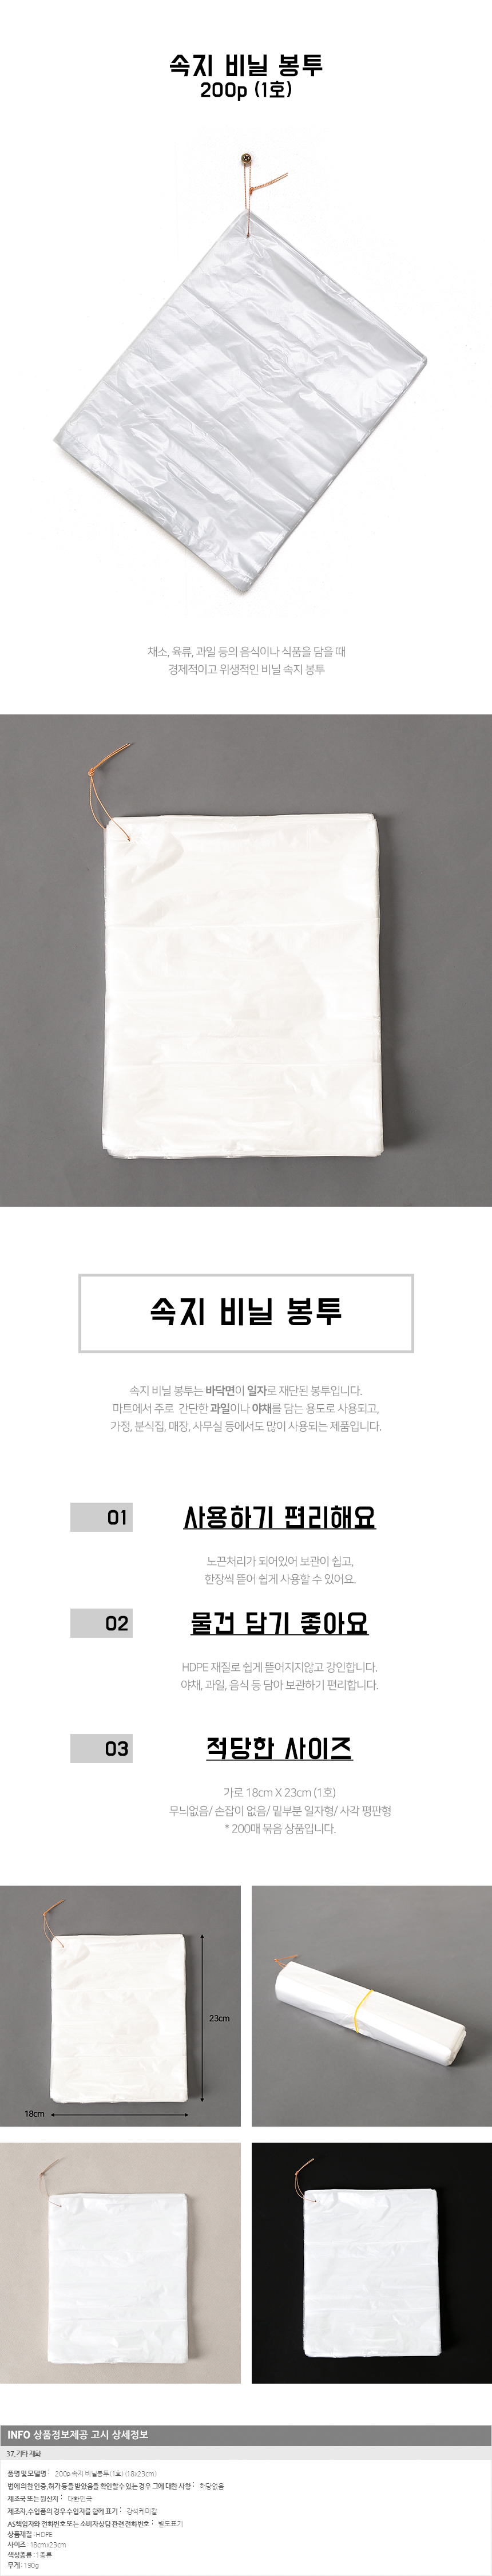 200p 속지비닐봉투 1호 / 야채 평판 쓰레기 비닐봉지